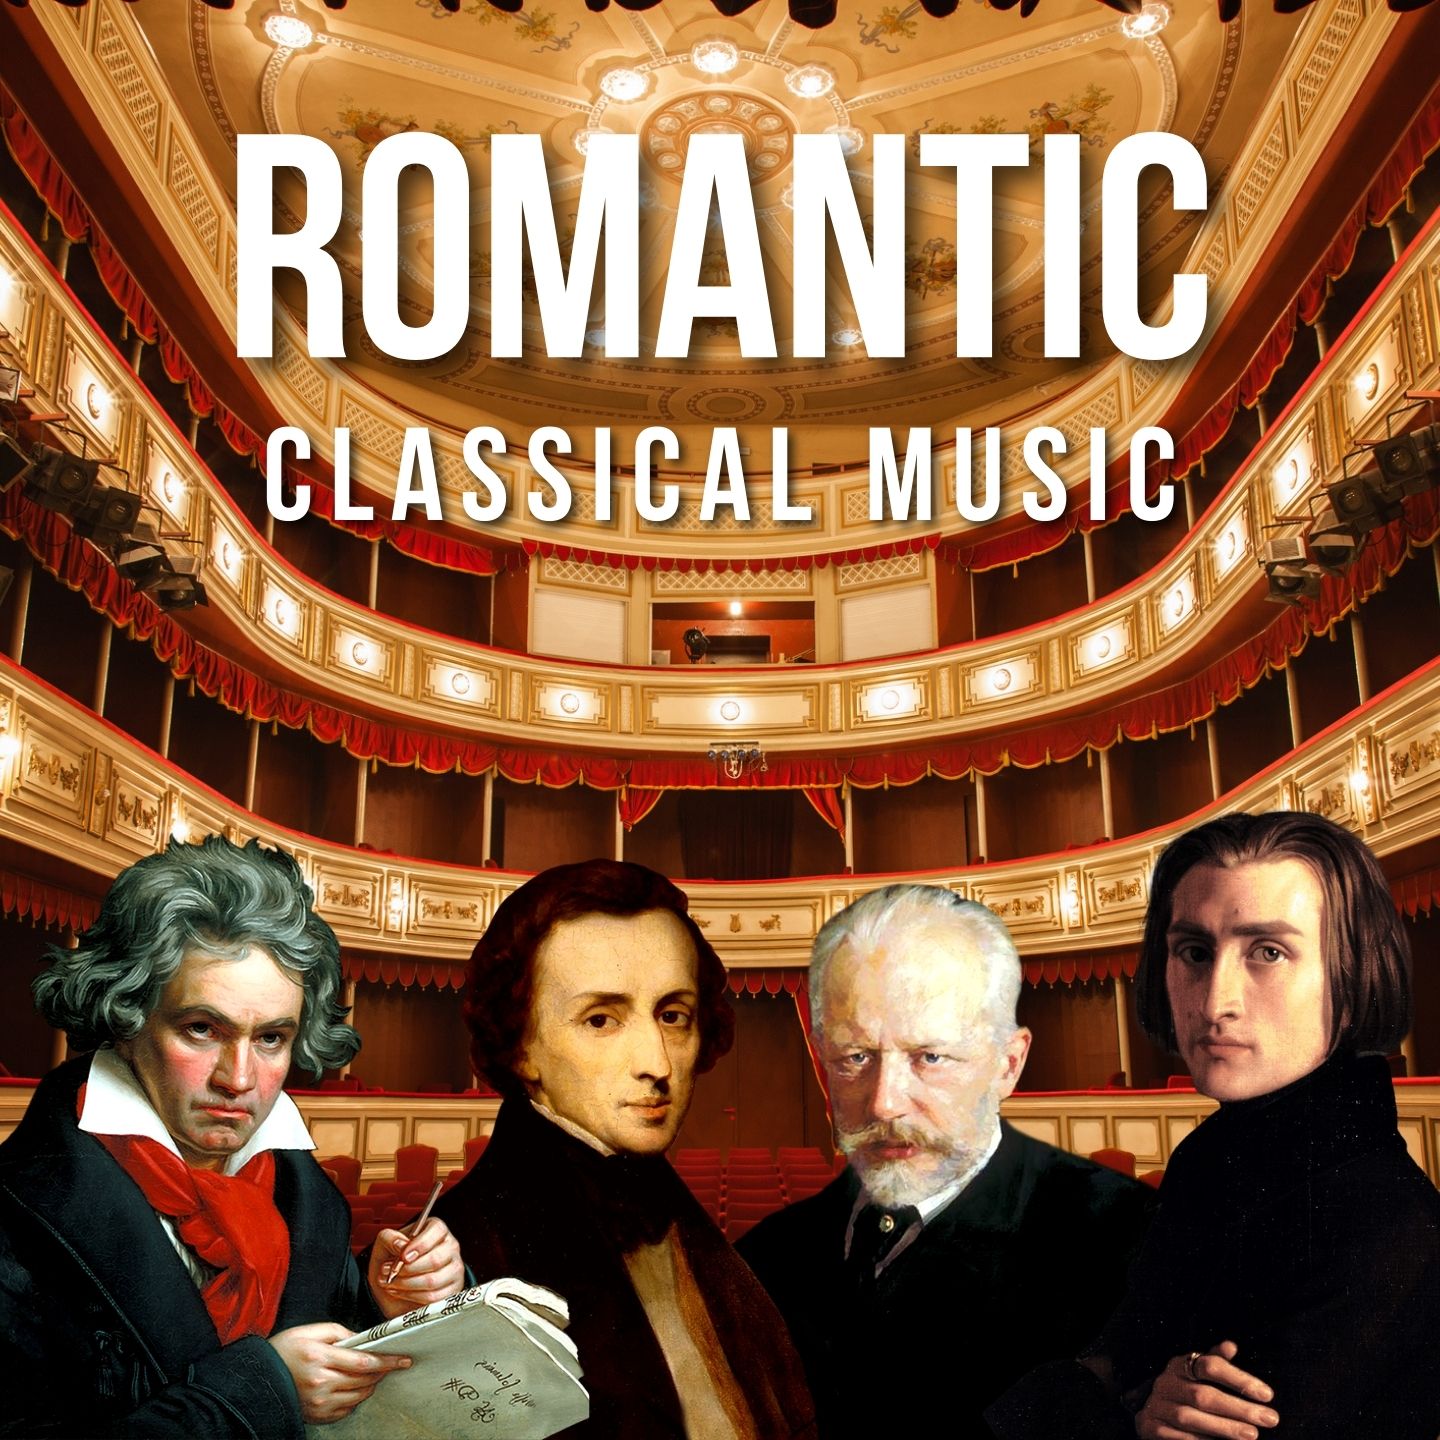 Romantic Classical Music